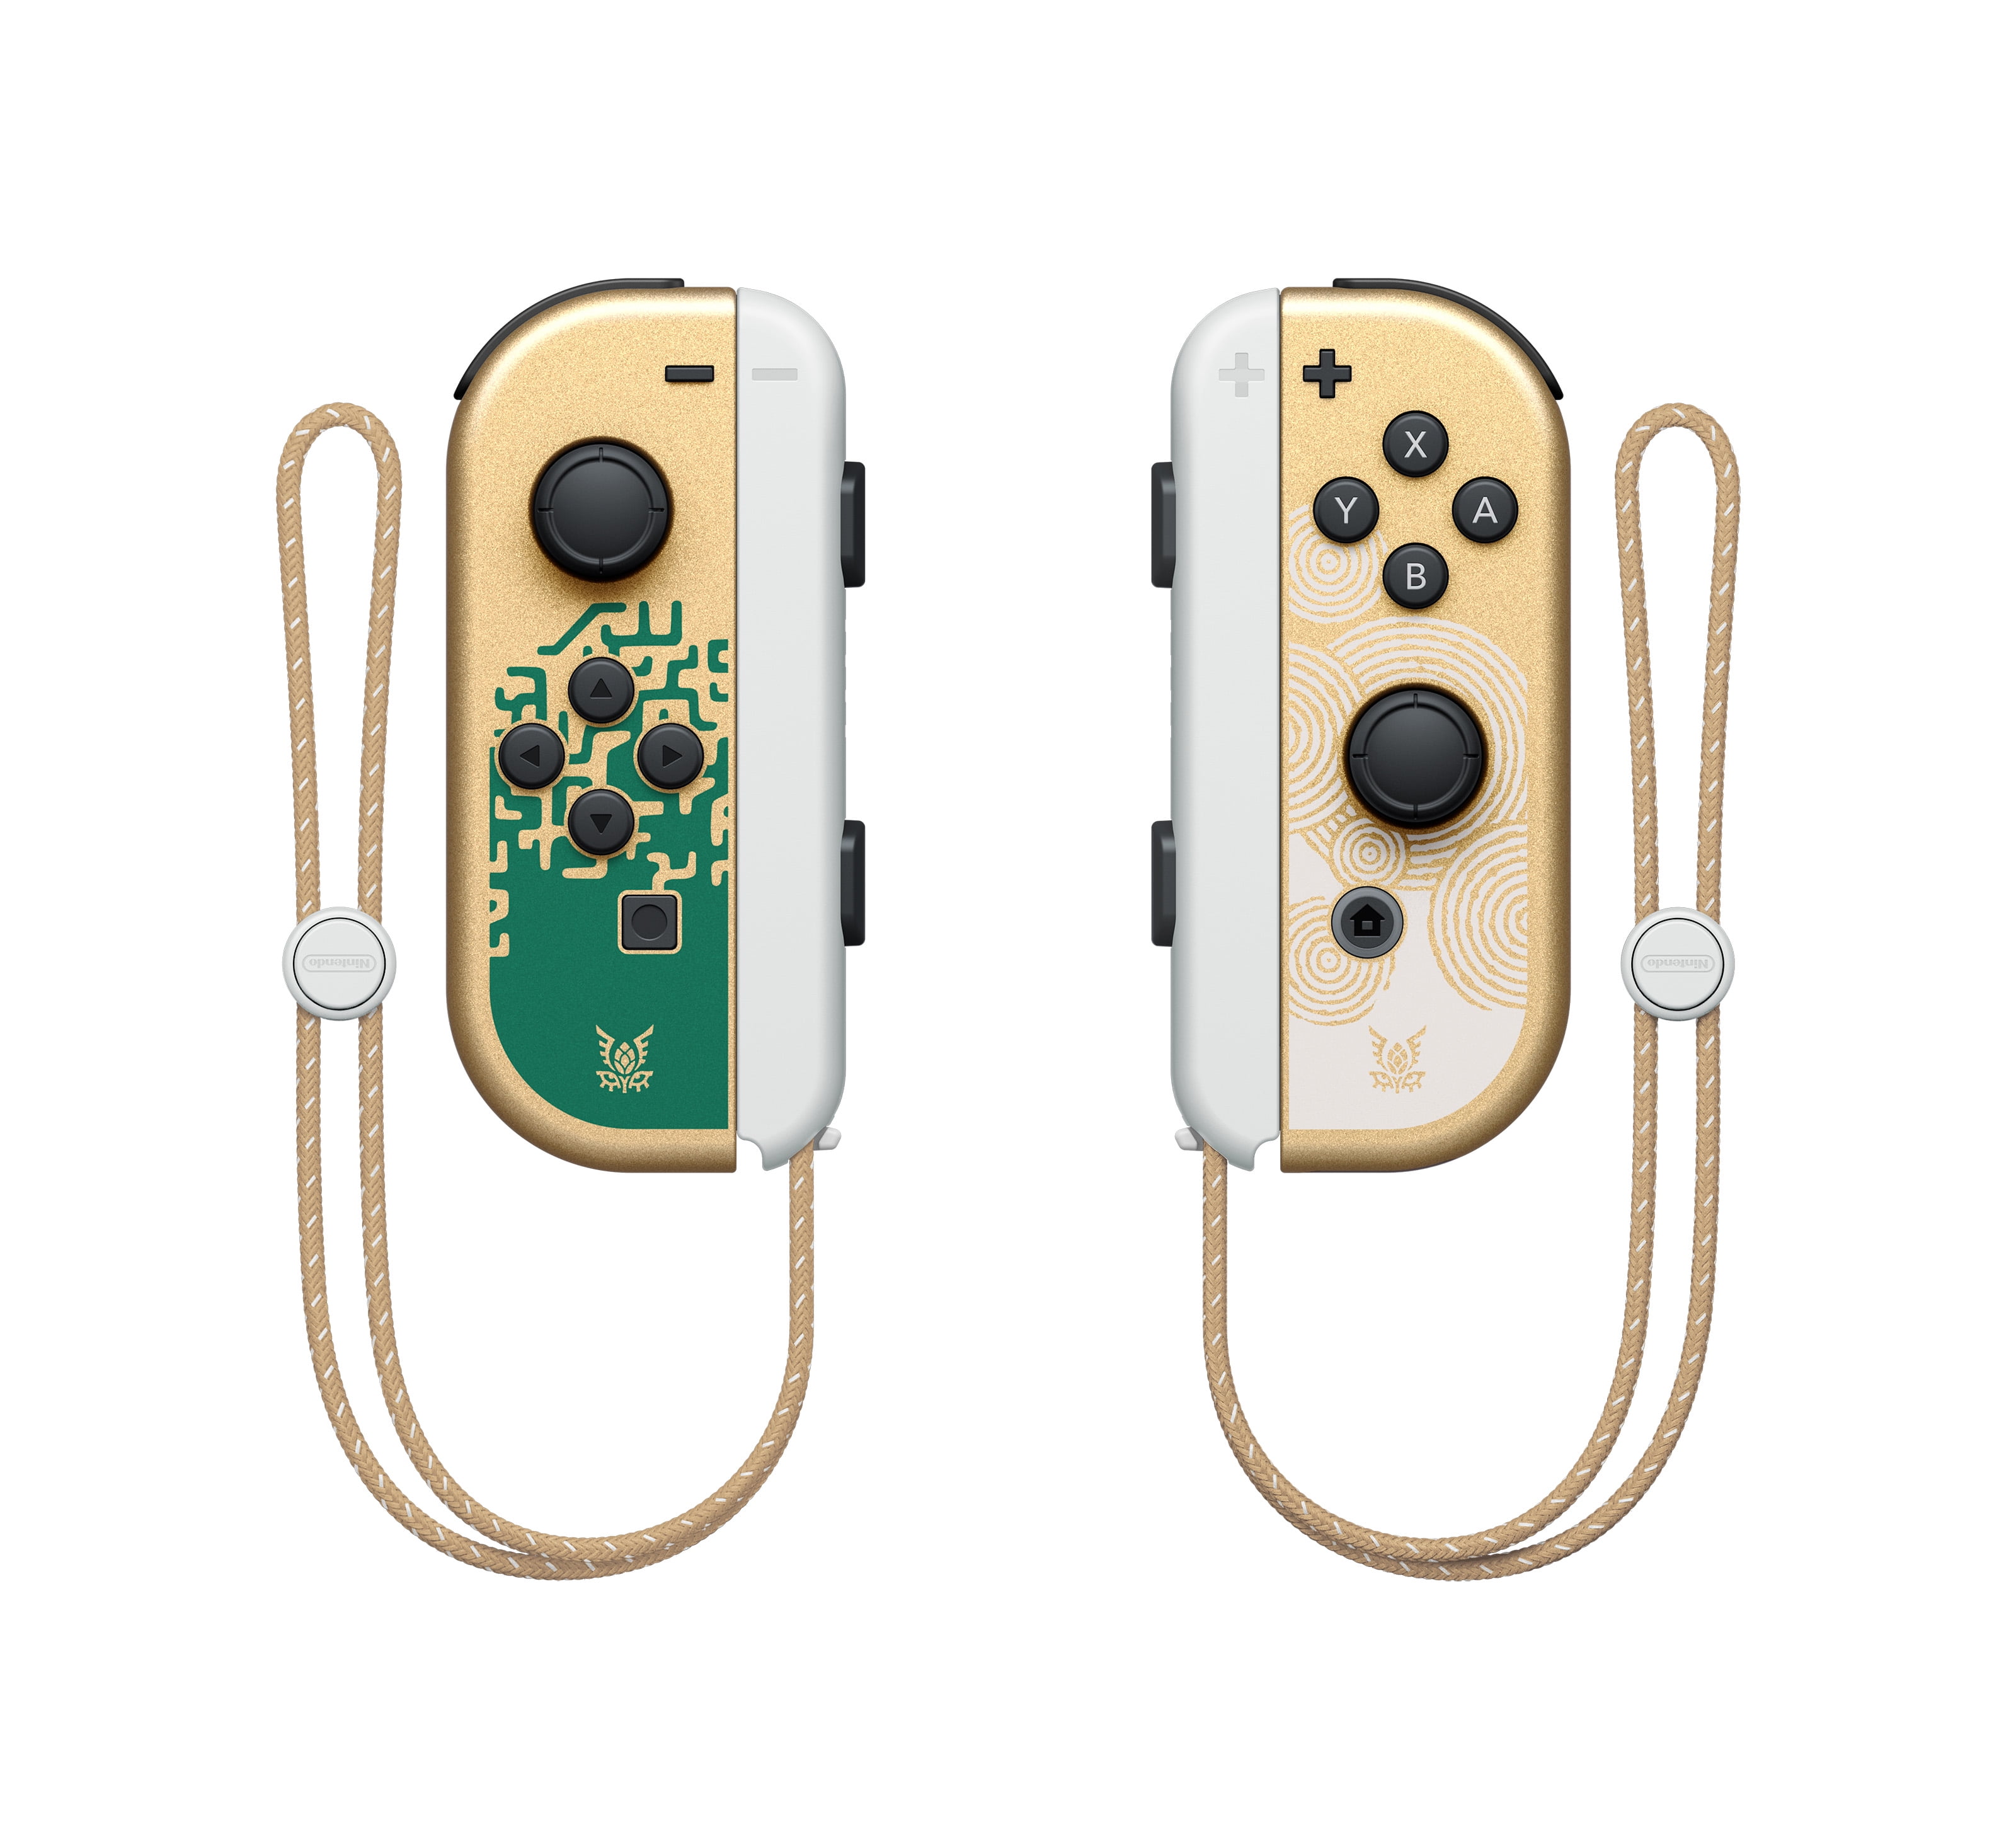  The Legend of Zelda: Tears of the Kingdom Standard - Nintendo  Switch [Digital Code] : Everything Else